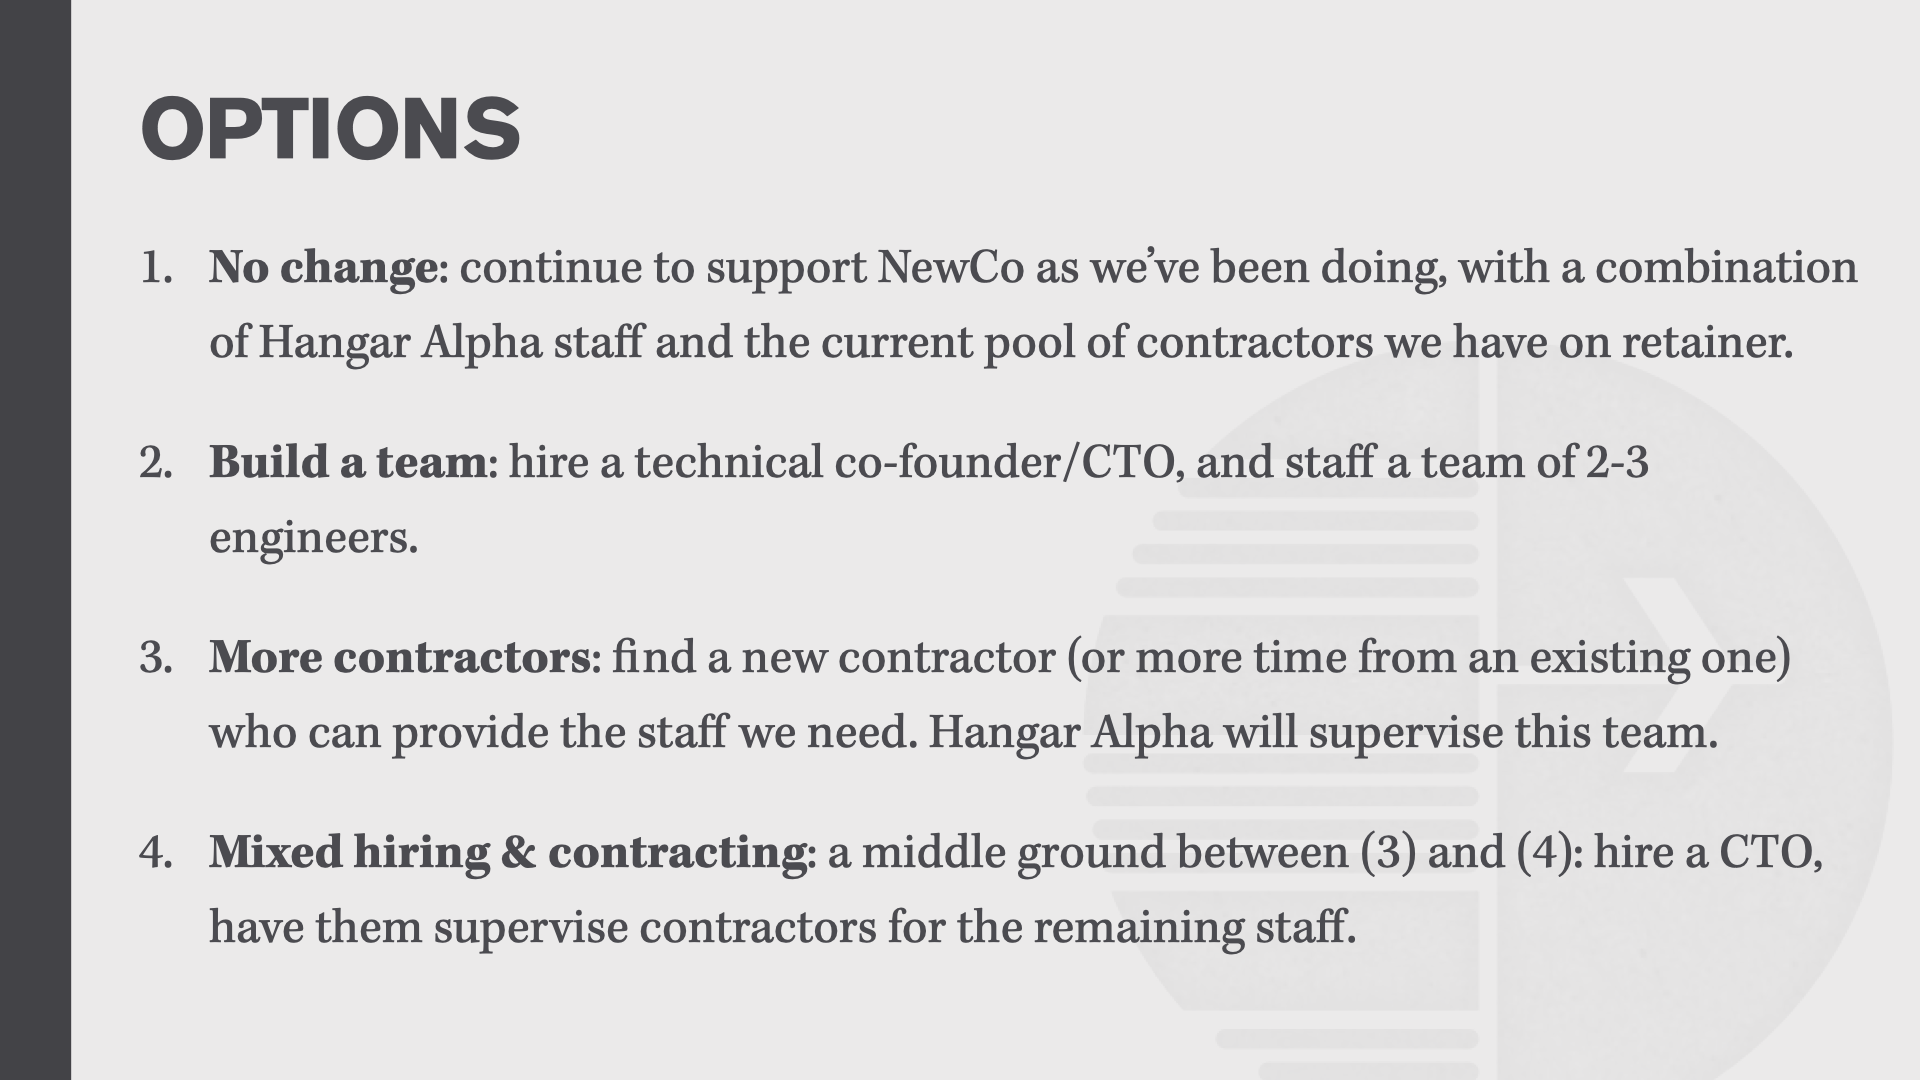 OPTIONS: (1) No change; (2) build a team; (3) more contractors; (4) mixed hiring & contractors